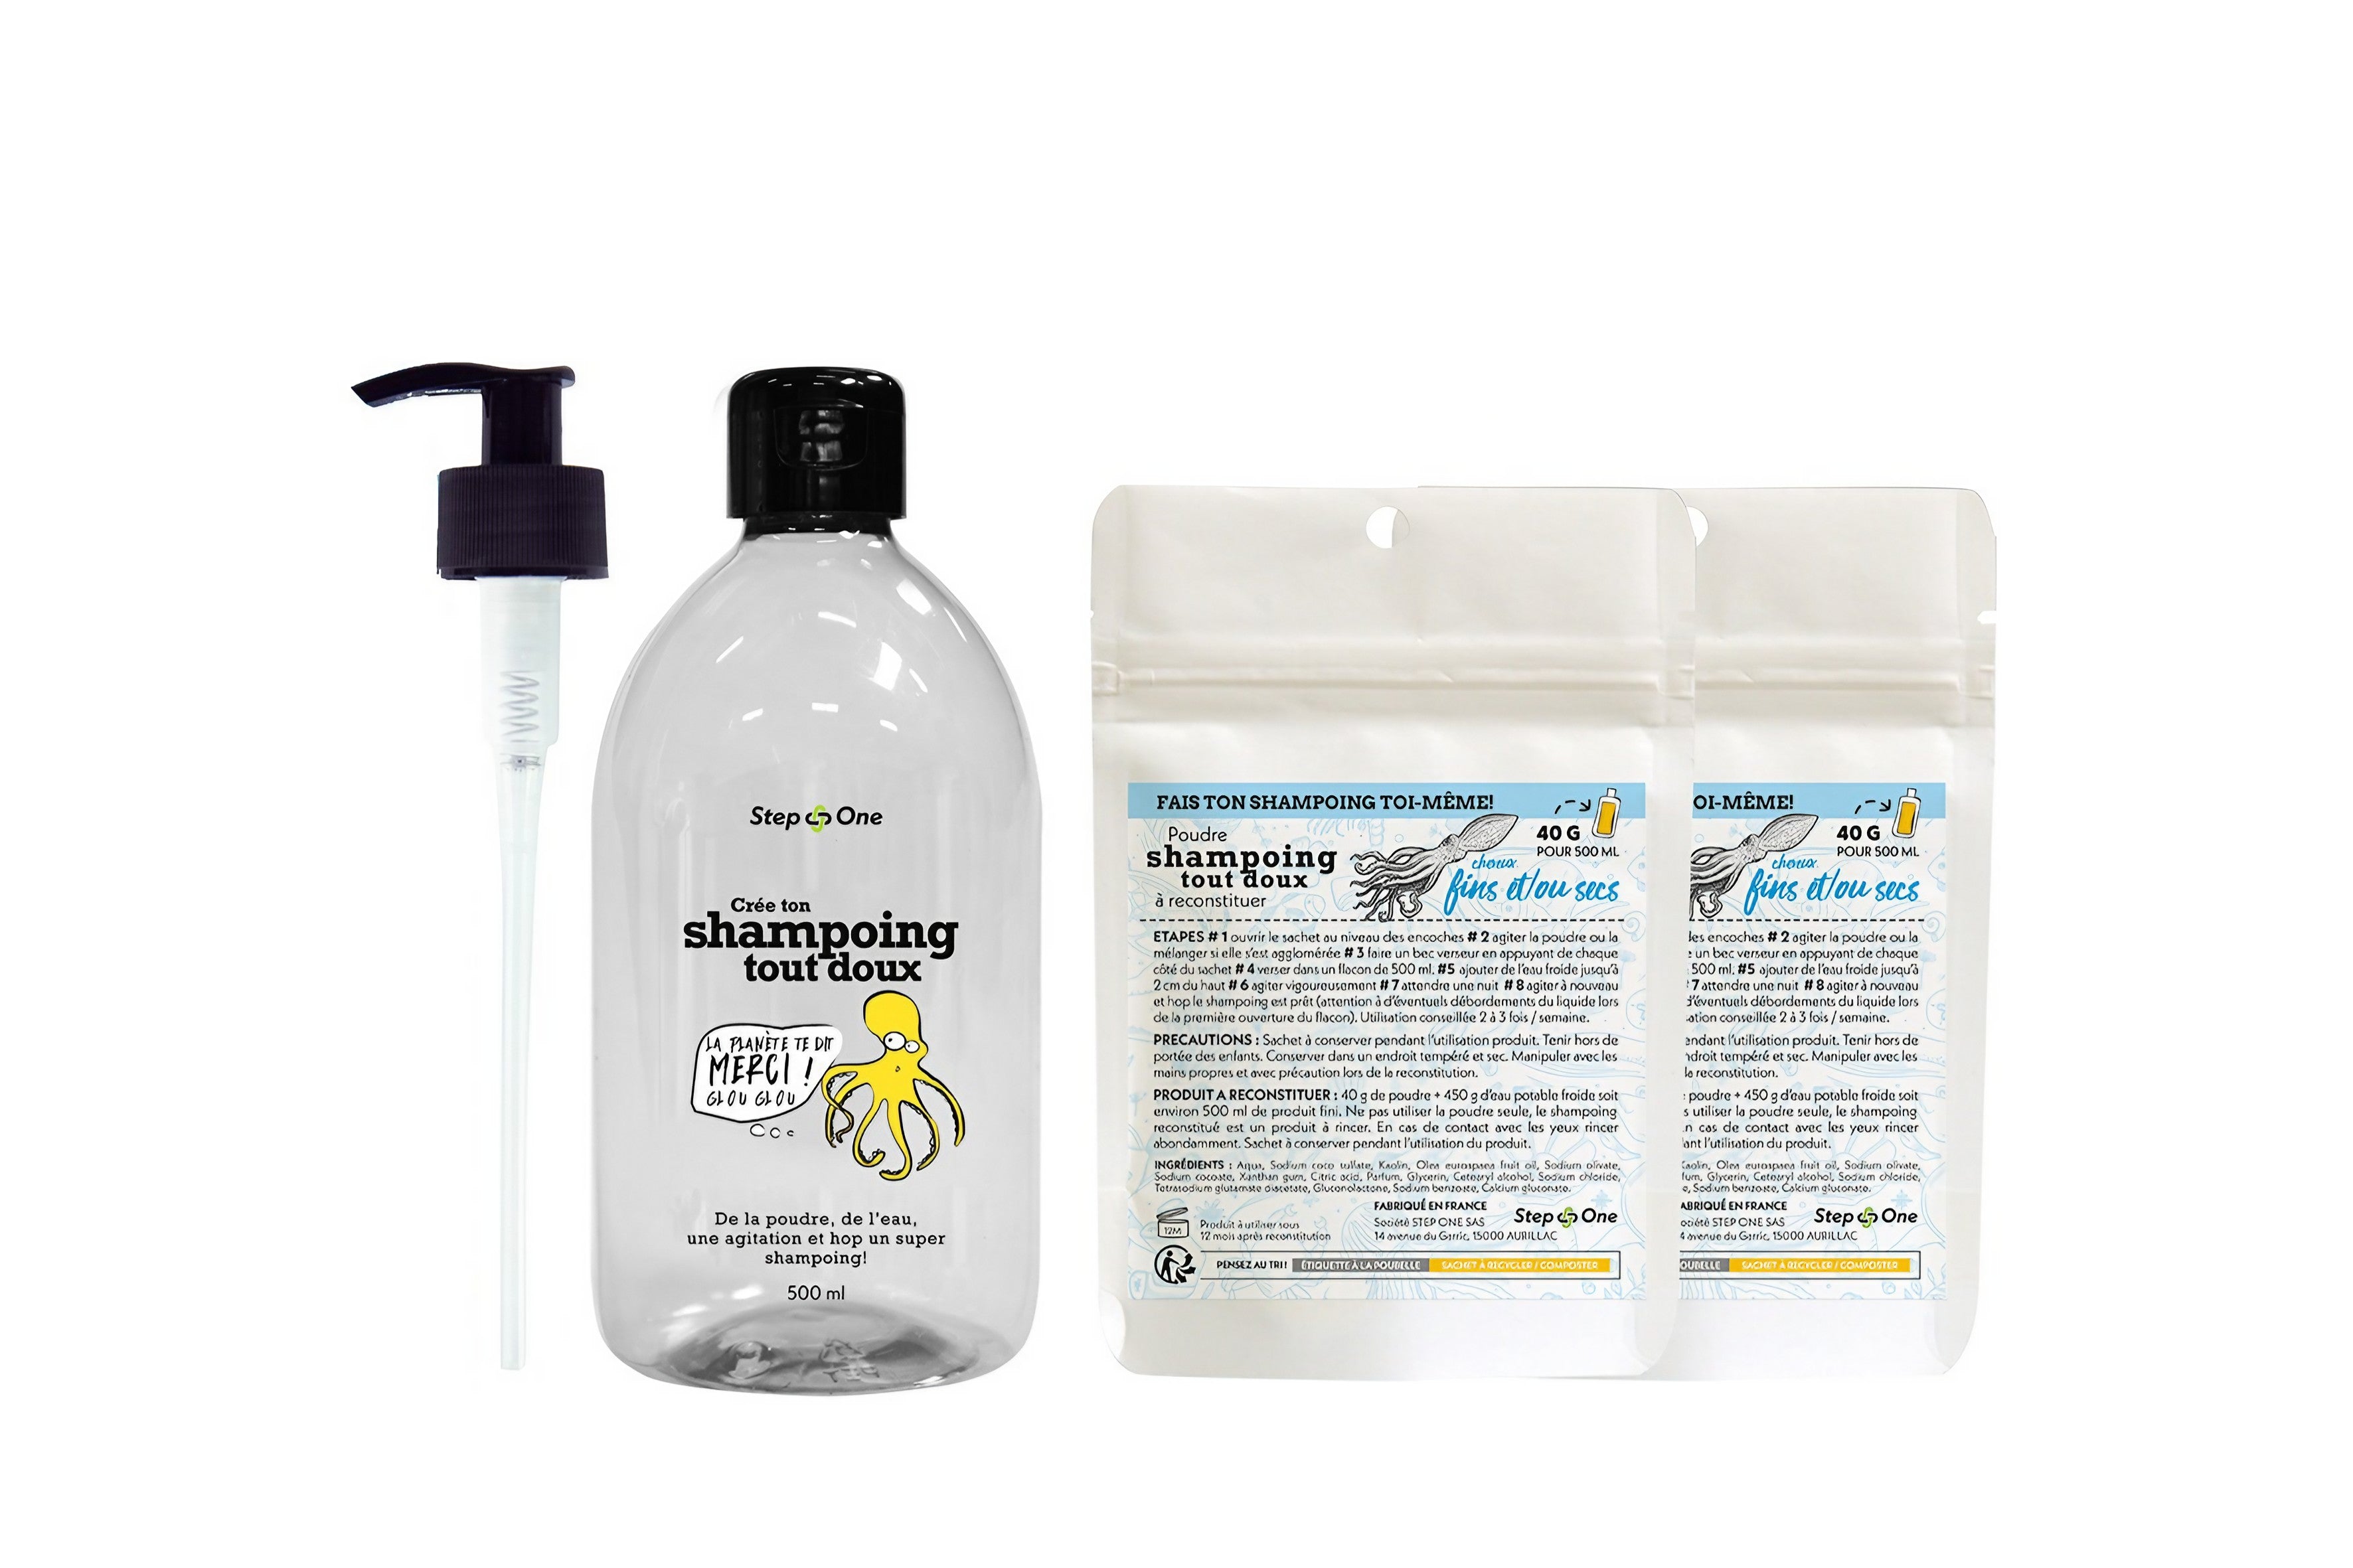 Kit de démarrage pour shampoing solide pour cheveux secs et fins, présenté avec un flacon et deux sachets réutilisables dans un emballage éco-responsable